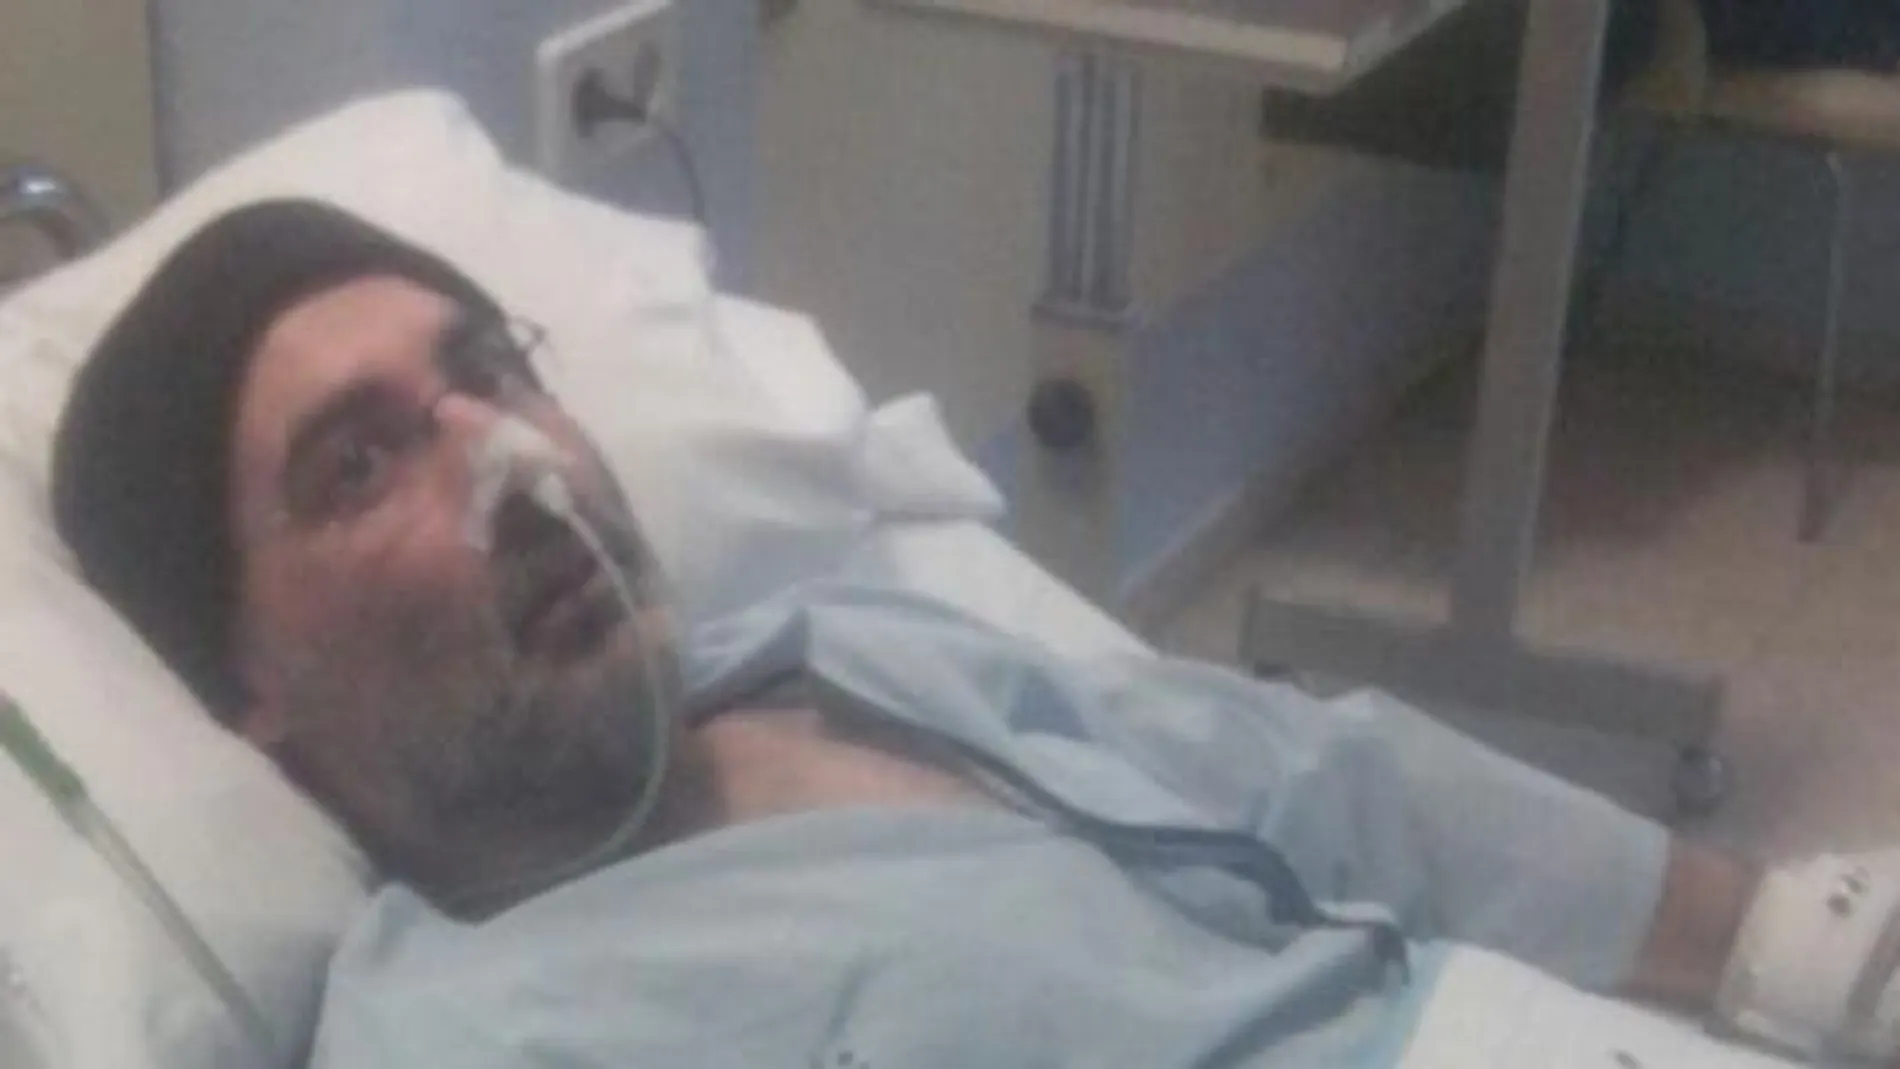 David Villafañe, en huelga de hambre desde hace 77 días, regresa a prisión tras ser hospitalizado